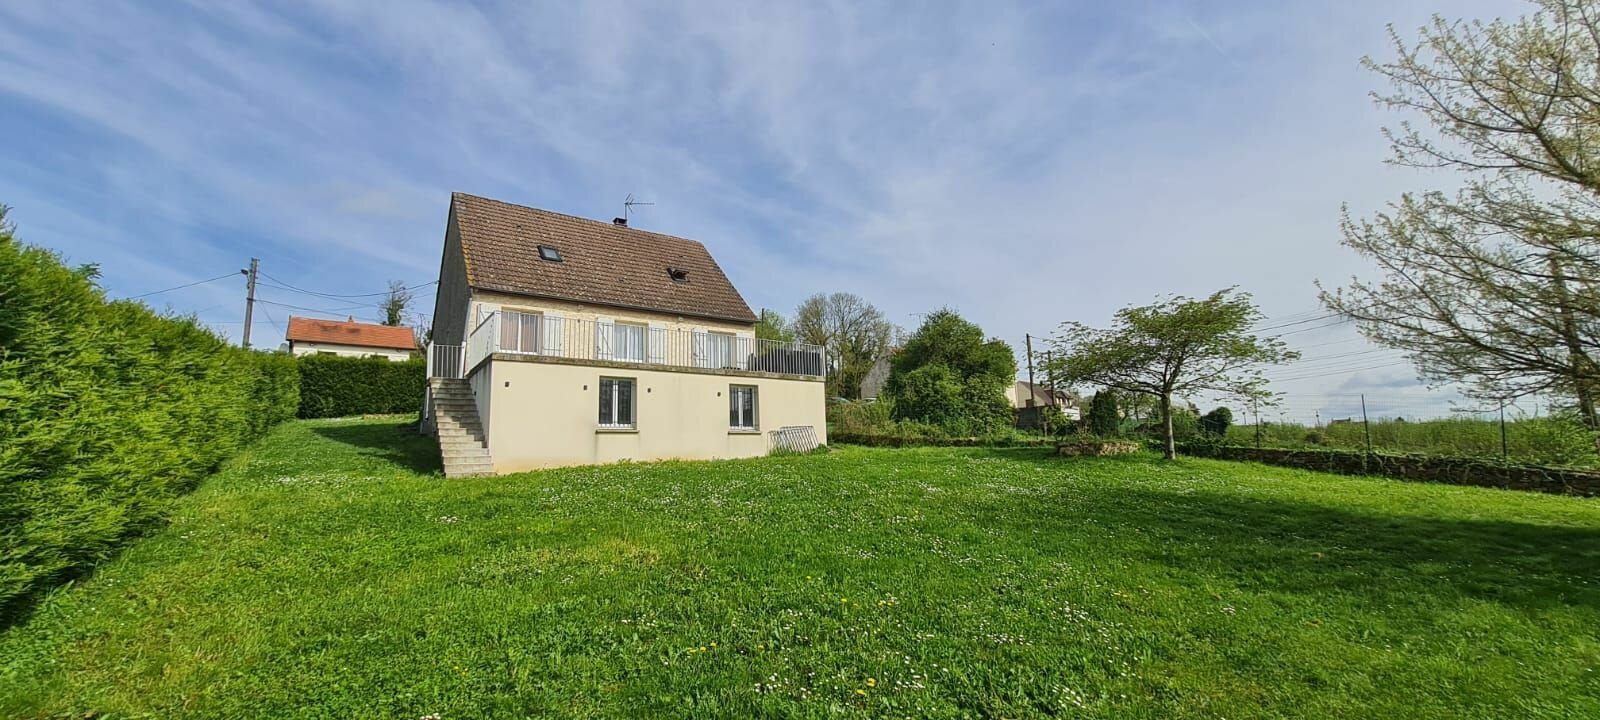 Maison à vendre 4 120m2 à Saâcy-sur-Marne vignette-3